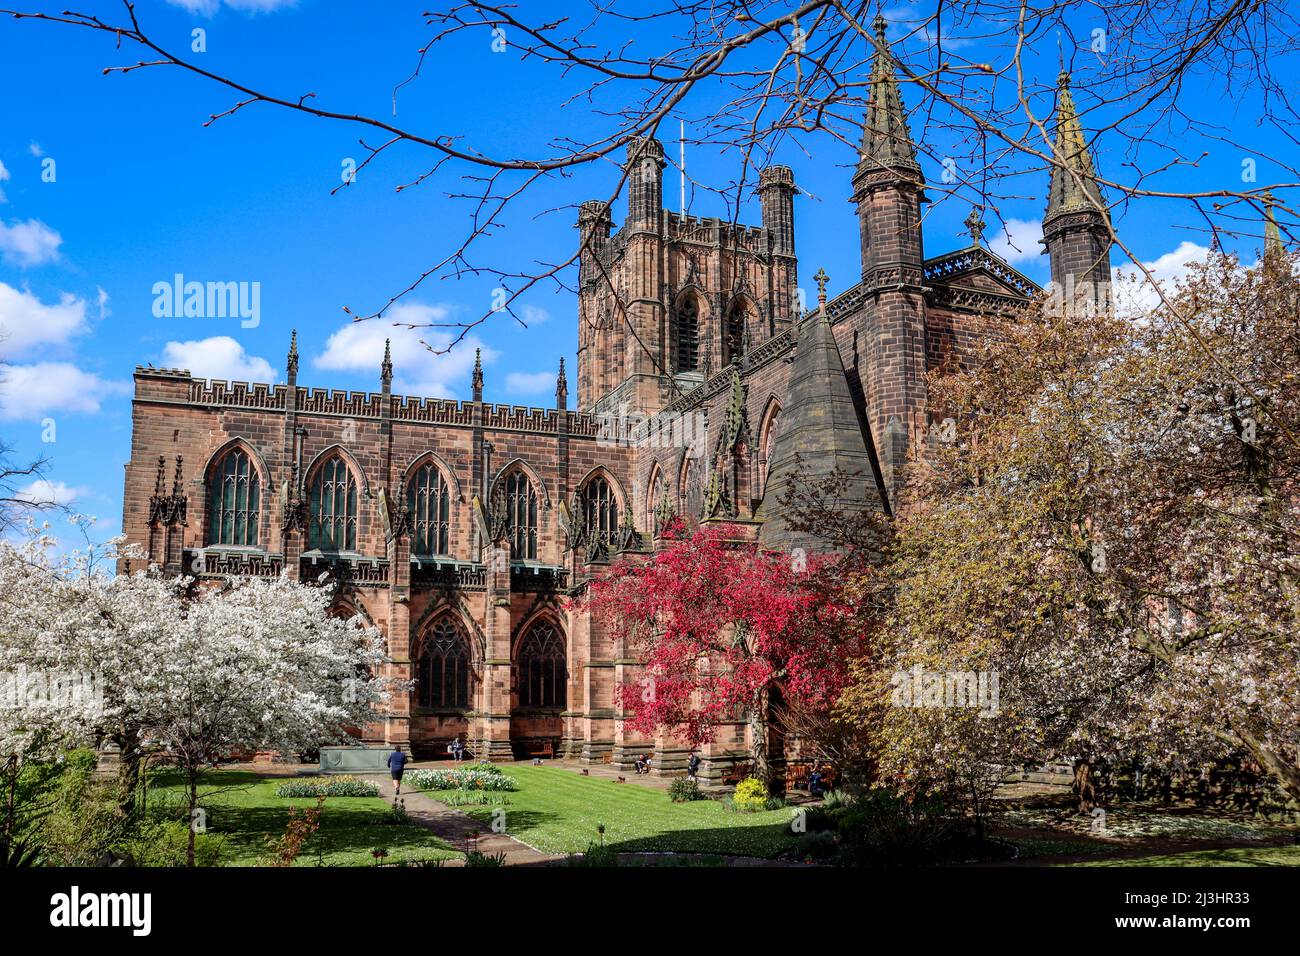 Cathédrale de Chester en fleurs, ciel bleu et arbres en fleurs Banque D'Images